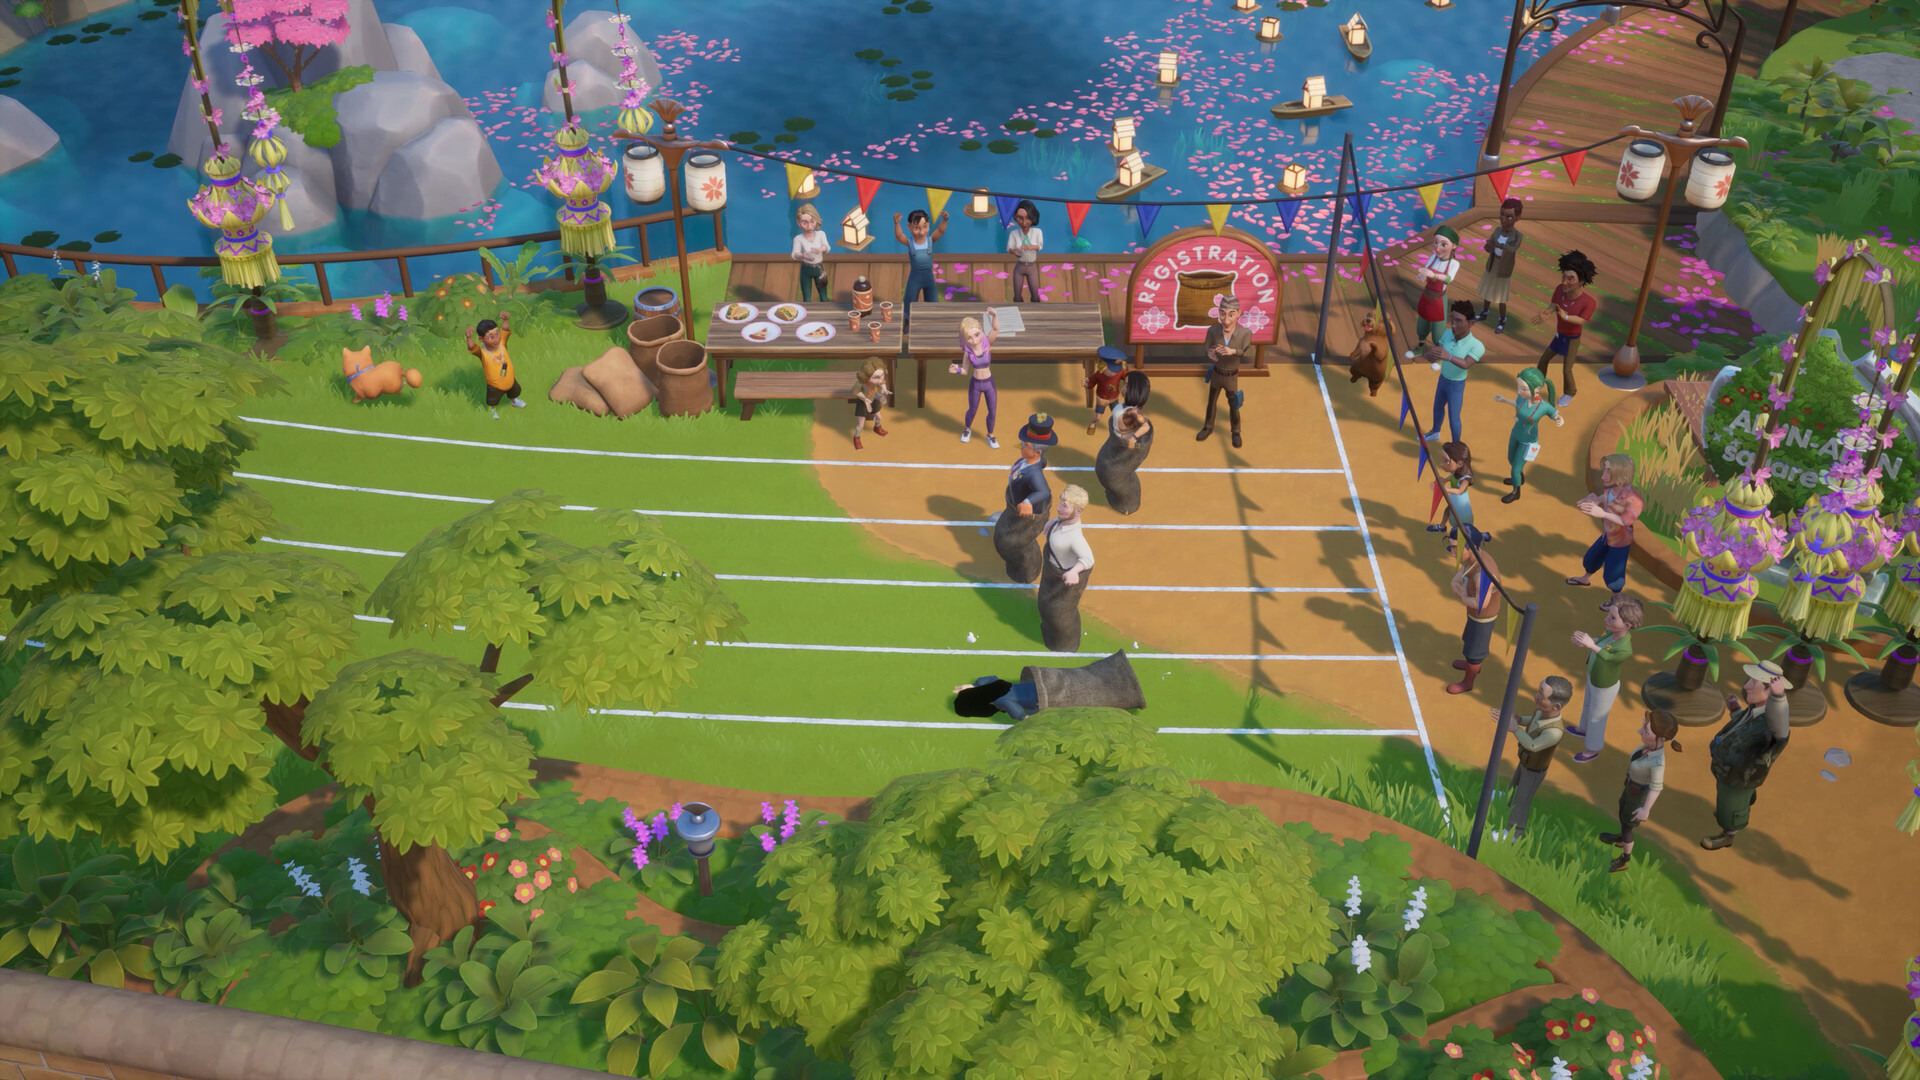 经营模拟新作《珊瑚岛》1.0 正式版 11 月中旬发行 开放组建家庭、新增人鱼王国剧情等 PC 单机